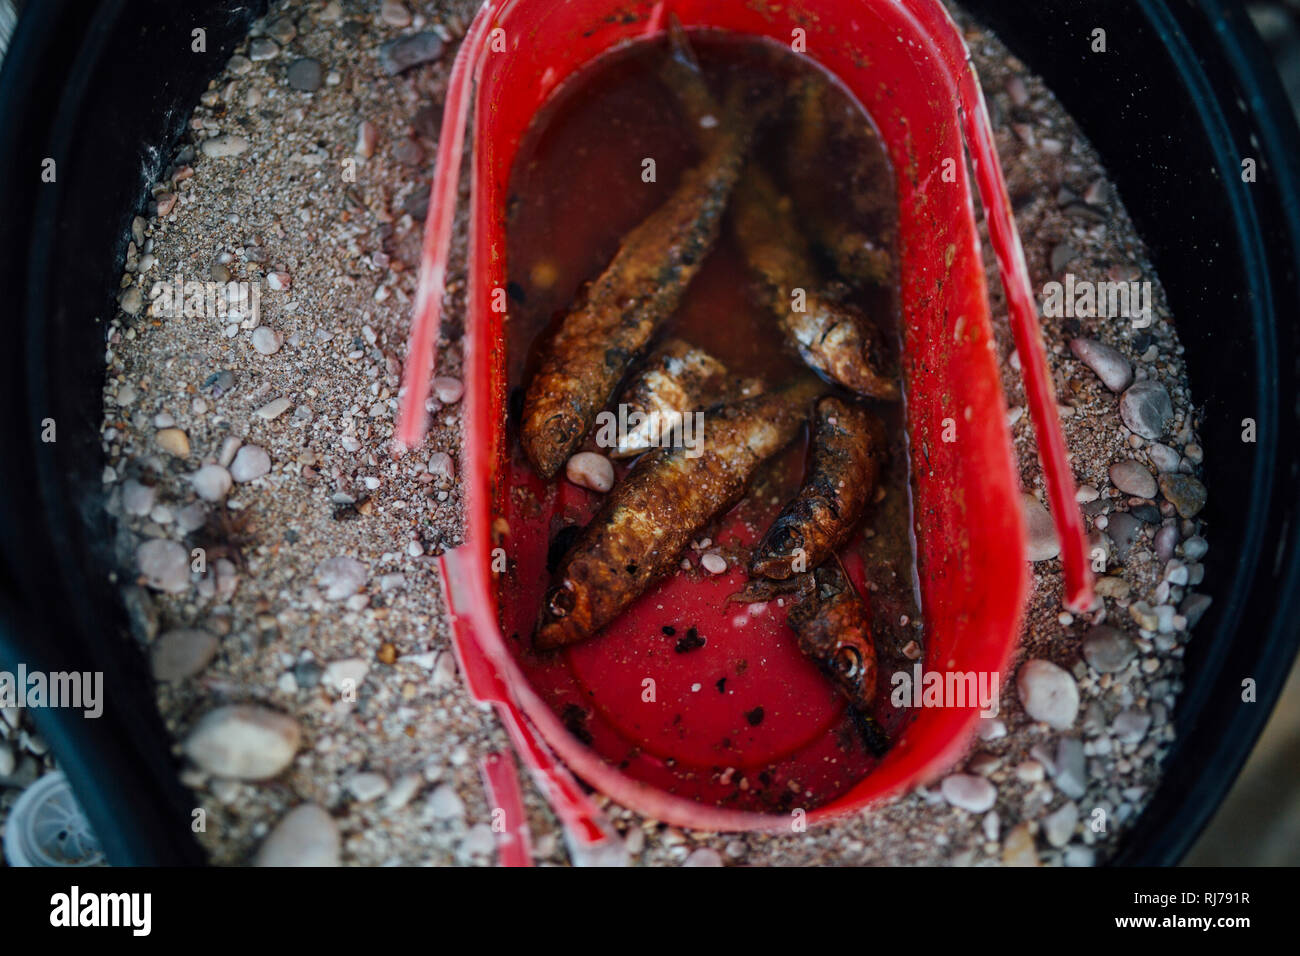 Verschmutzung der Meere, gebratene Fische in angespültem Eimer Stock Photo